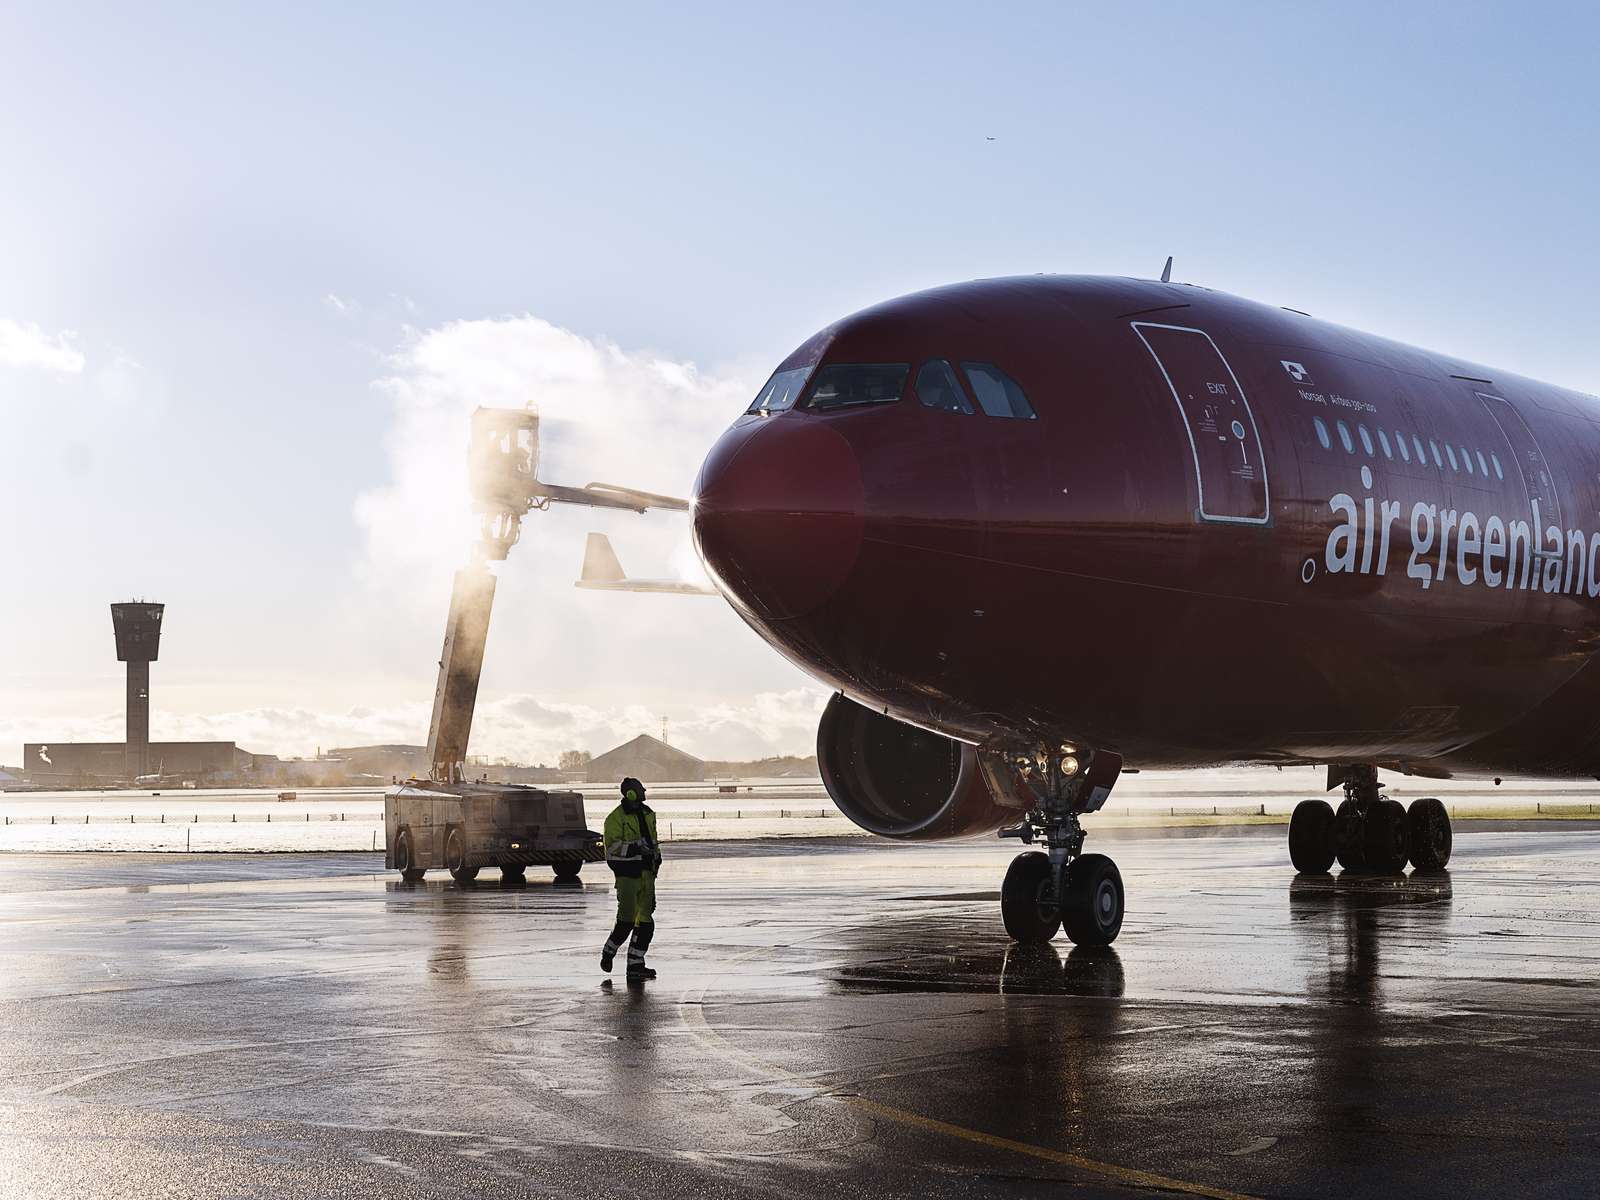 Air Greenland A330 deicing